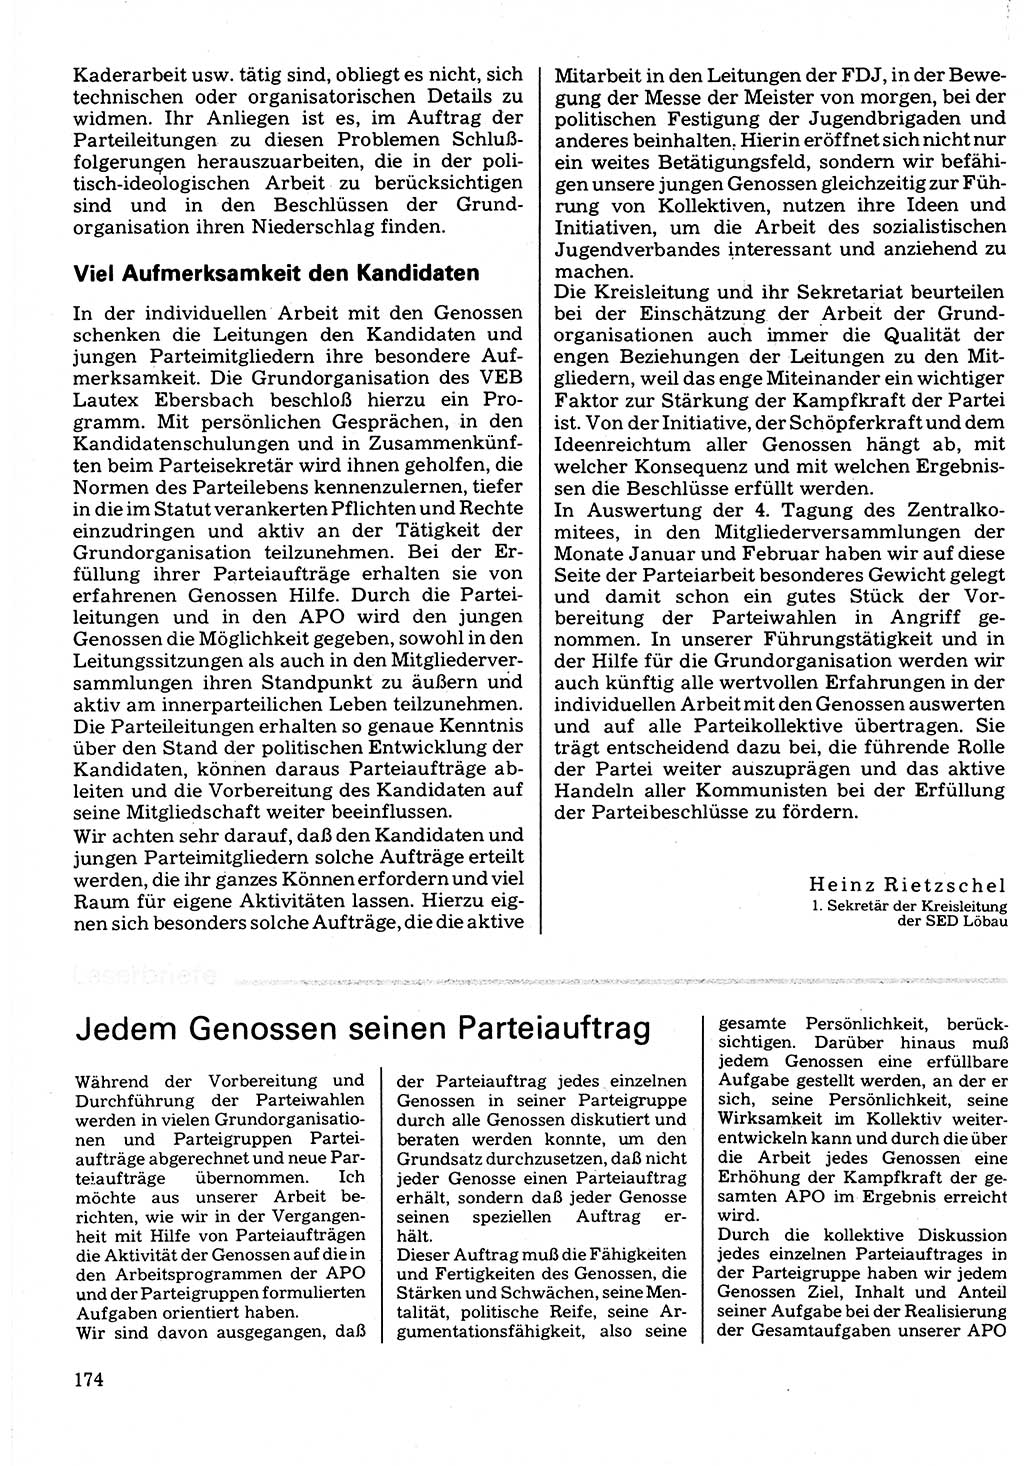 Neuer Weg (NW), Organ des Zentralkomitees (ZK) der SED (Sozialistische Einheitspartei Deutschlands) für Fragen des Parteilebens, 32. Jahrgang [Deutsche Demokratische Republik (DDR)] 1977, Seite 174 (NW ZK SED DDR 1977, S. 174)